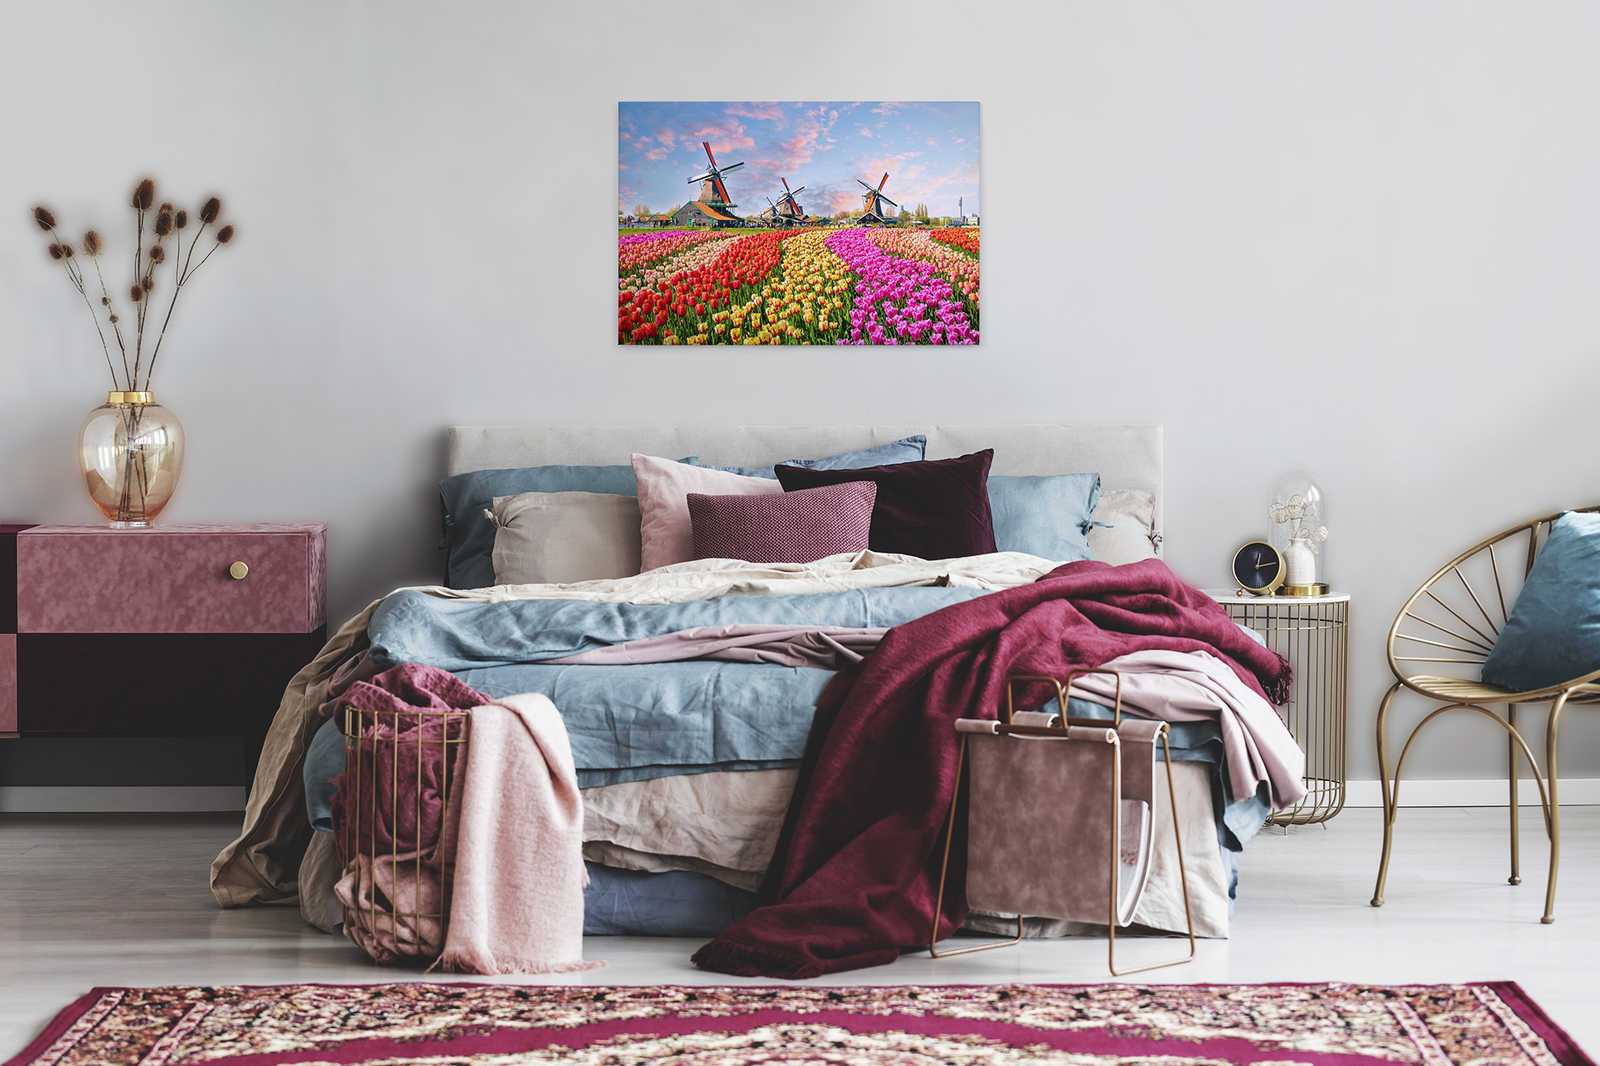             Canvas Holland Tulpen & Speldenwiel - 0,90 m x 0,60 m
        